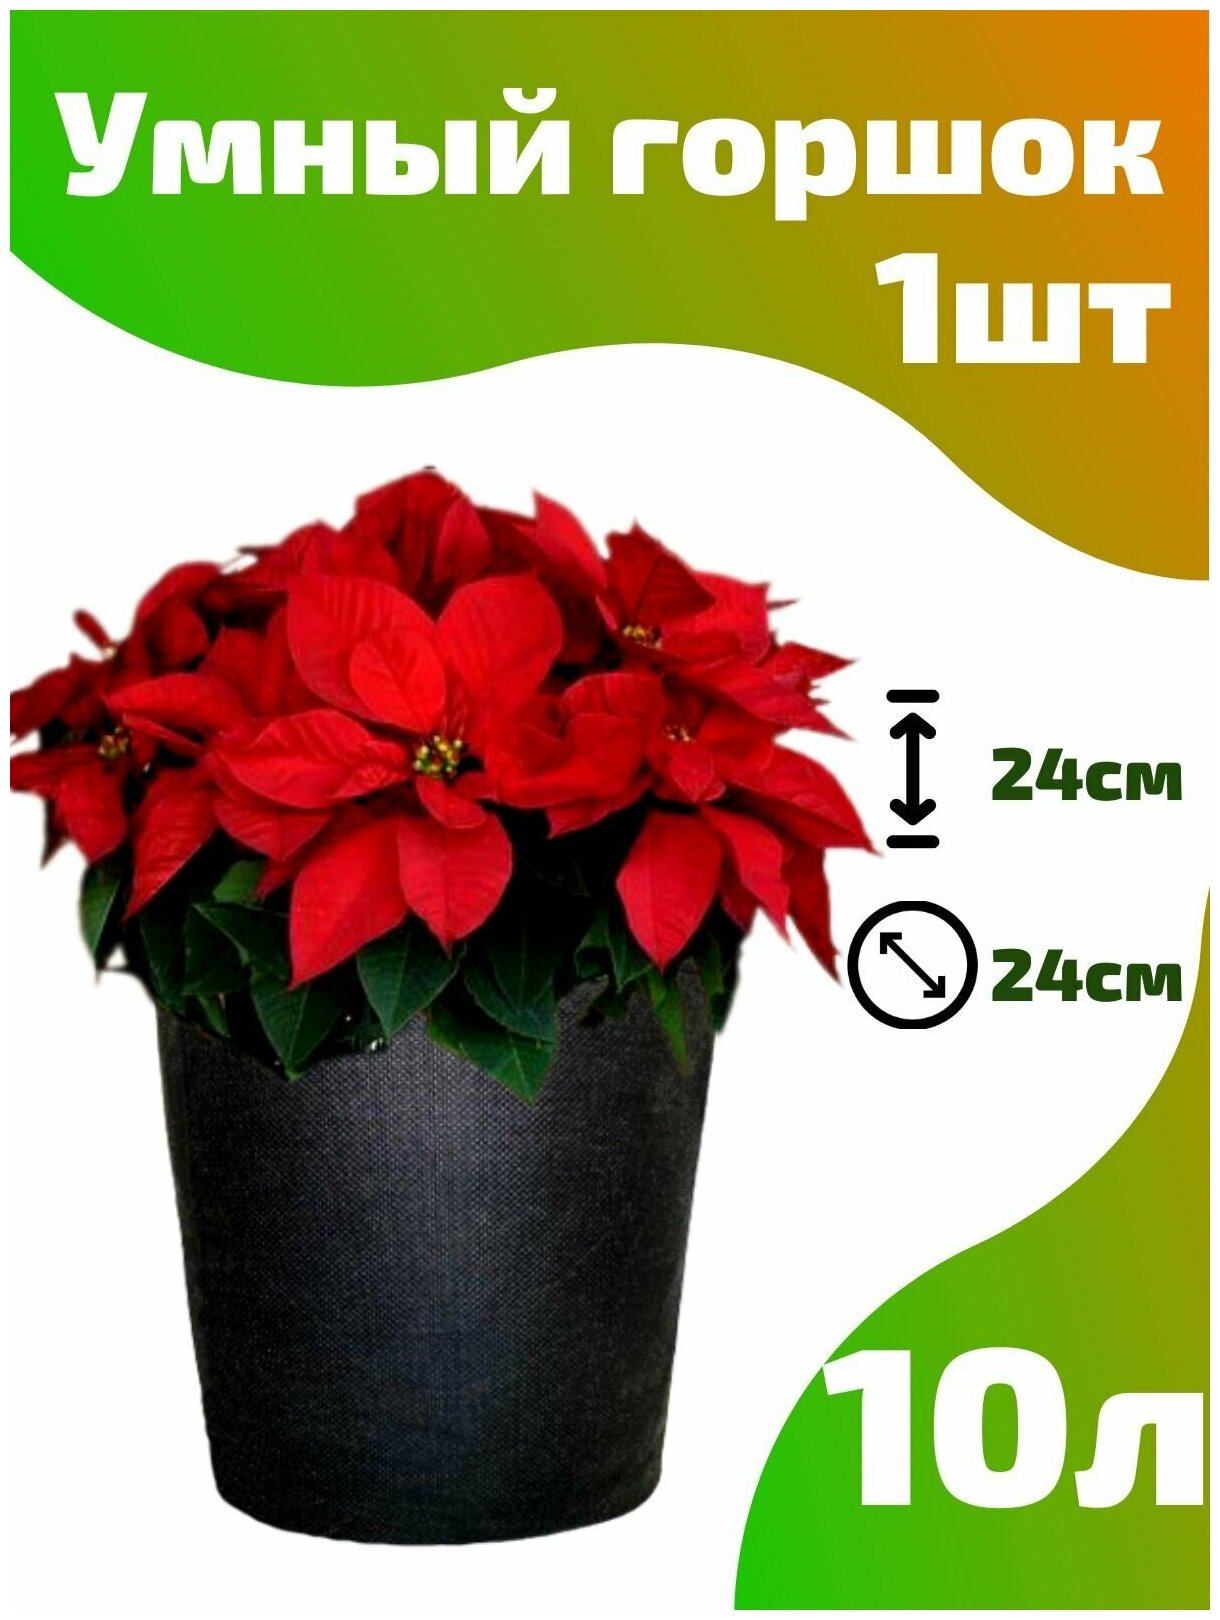 Горшок текстильный для рассады, растений, цветов Smart Pot - 10 л 1 шт.